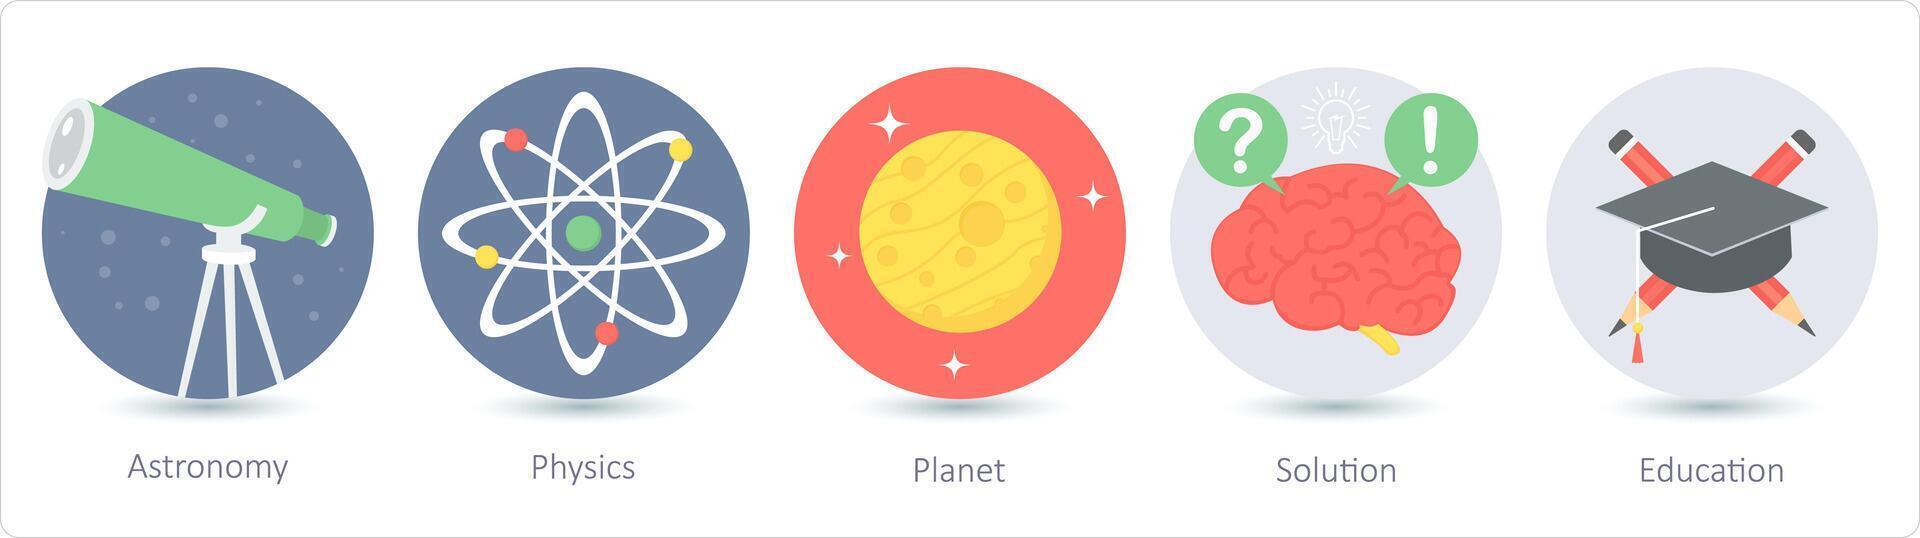 en uppsättning av 5 utbildning ikoner som astronomi, fysik, planet vektor